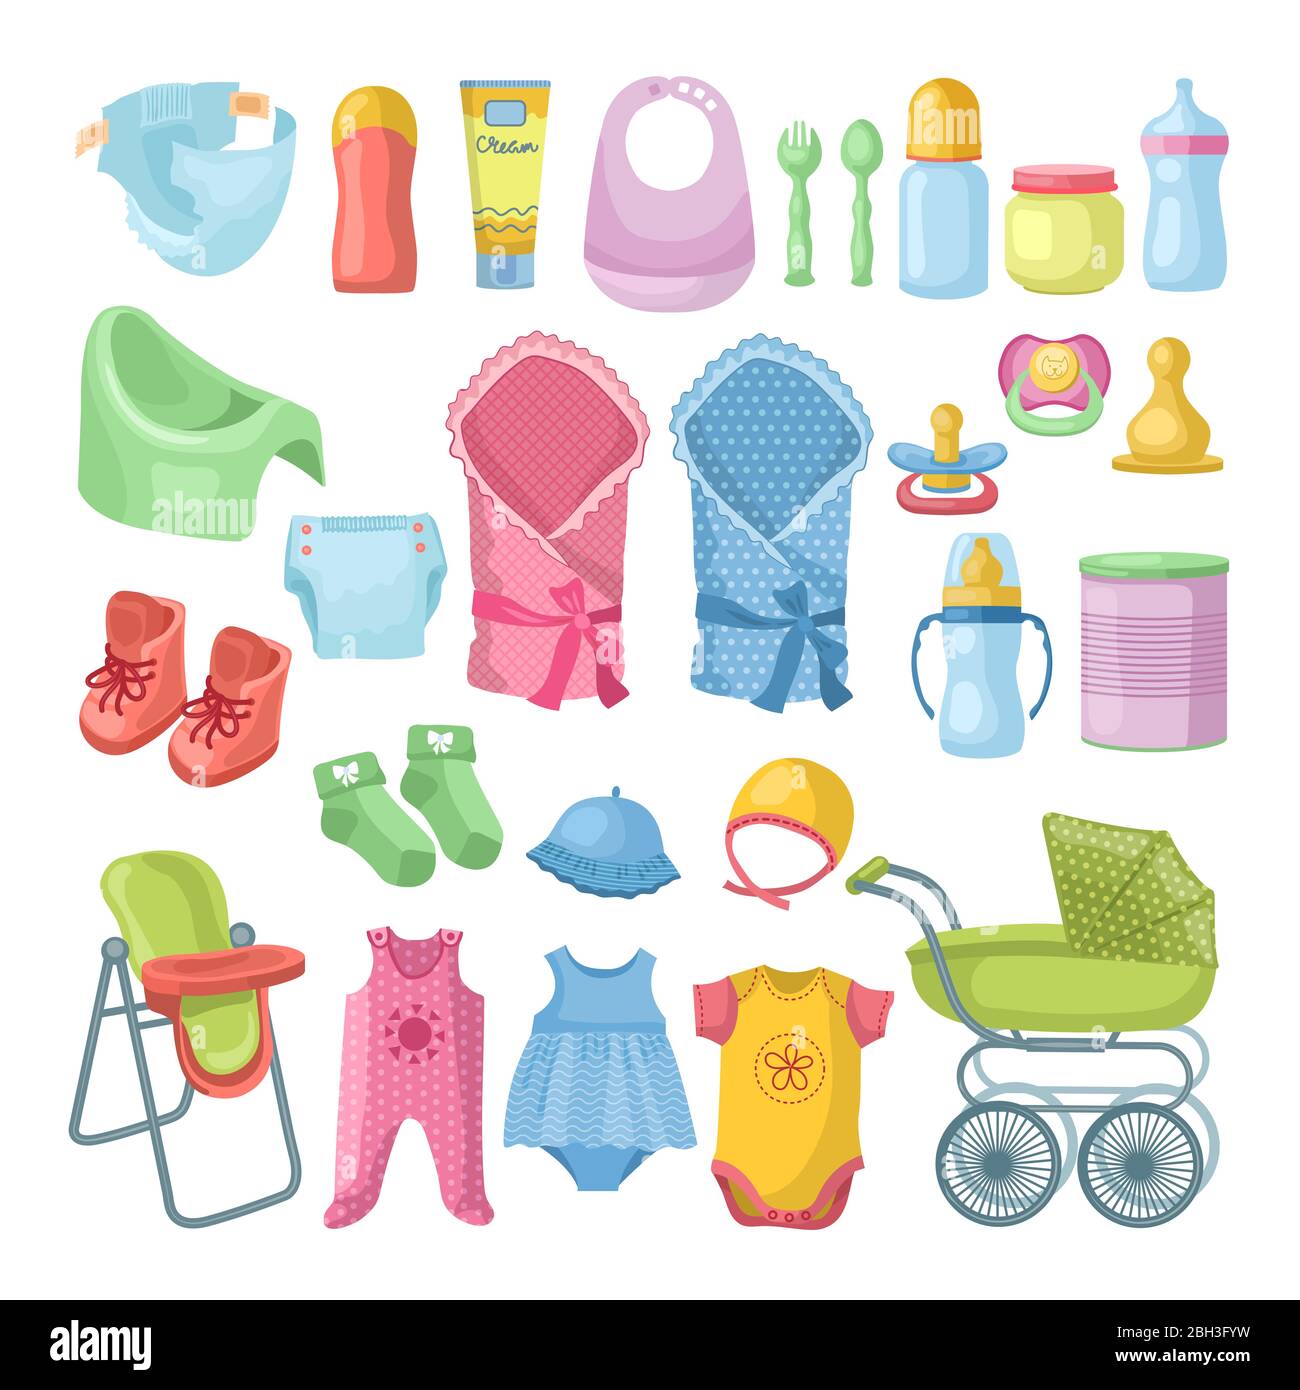 Illustrationen Set von neugeborenen Sachen. Verschiedene Bilder im Cartoon-Stil eingestellt. Kind und Baby tragen Spielzeug, Zubehör für Neugeborene Baby Vektor Stock Vektor